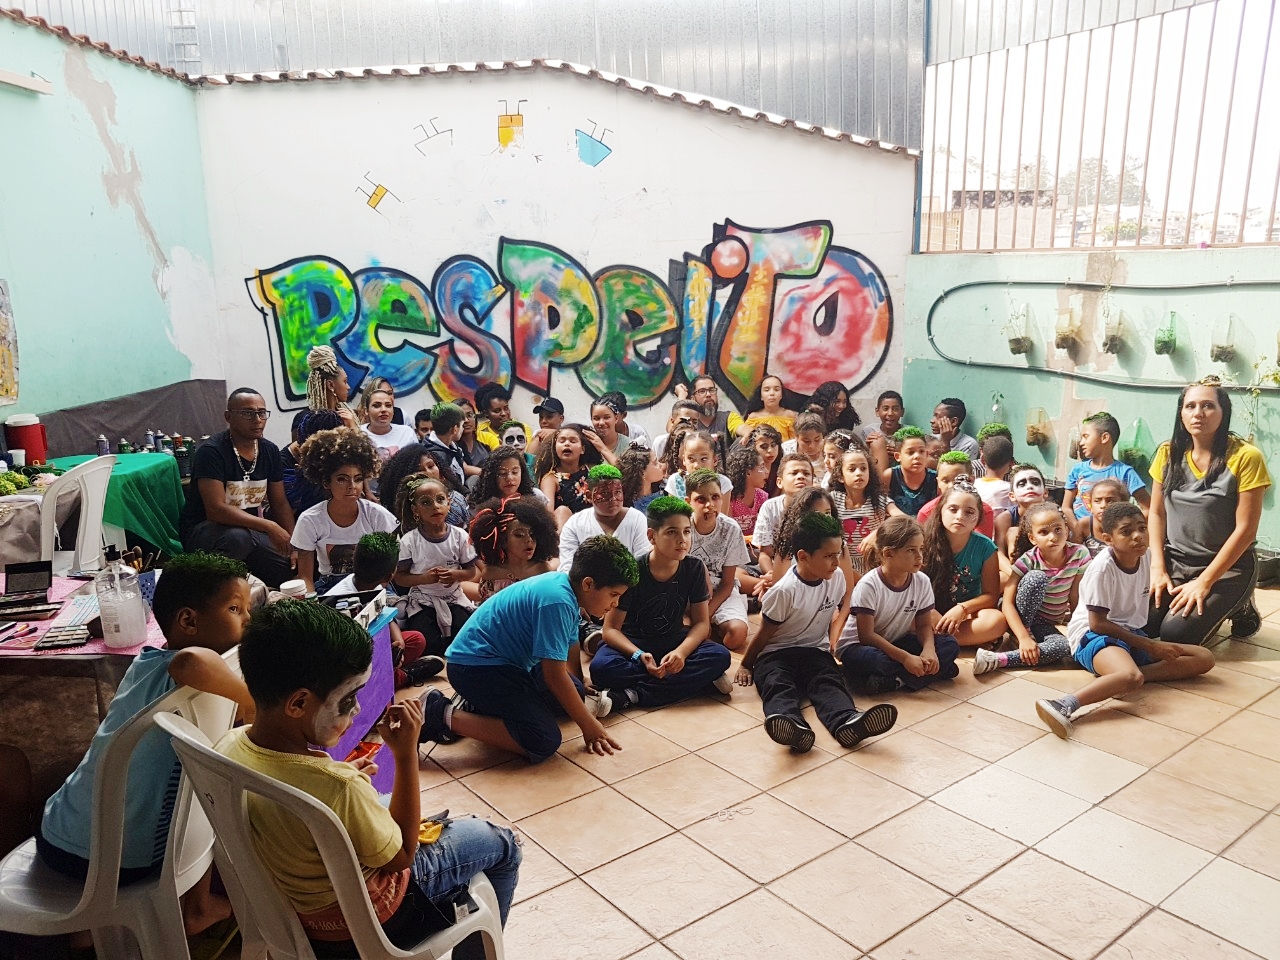 várias crianças posam para a foto sentadas no chão, atrás há uma parede branca em que pintaram a palavra “RESPEITO” de maneira colorida e grande, visando destaque.